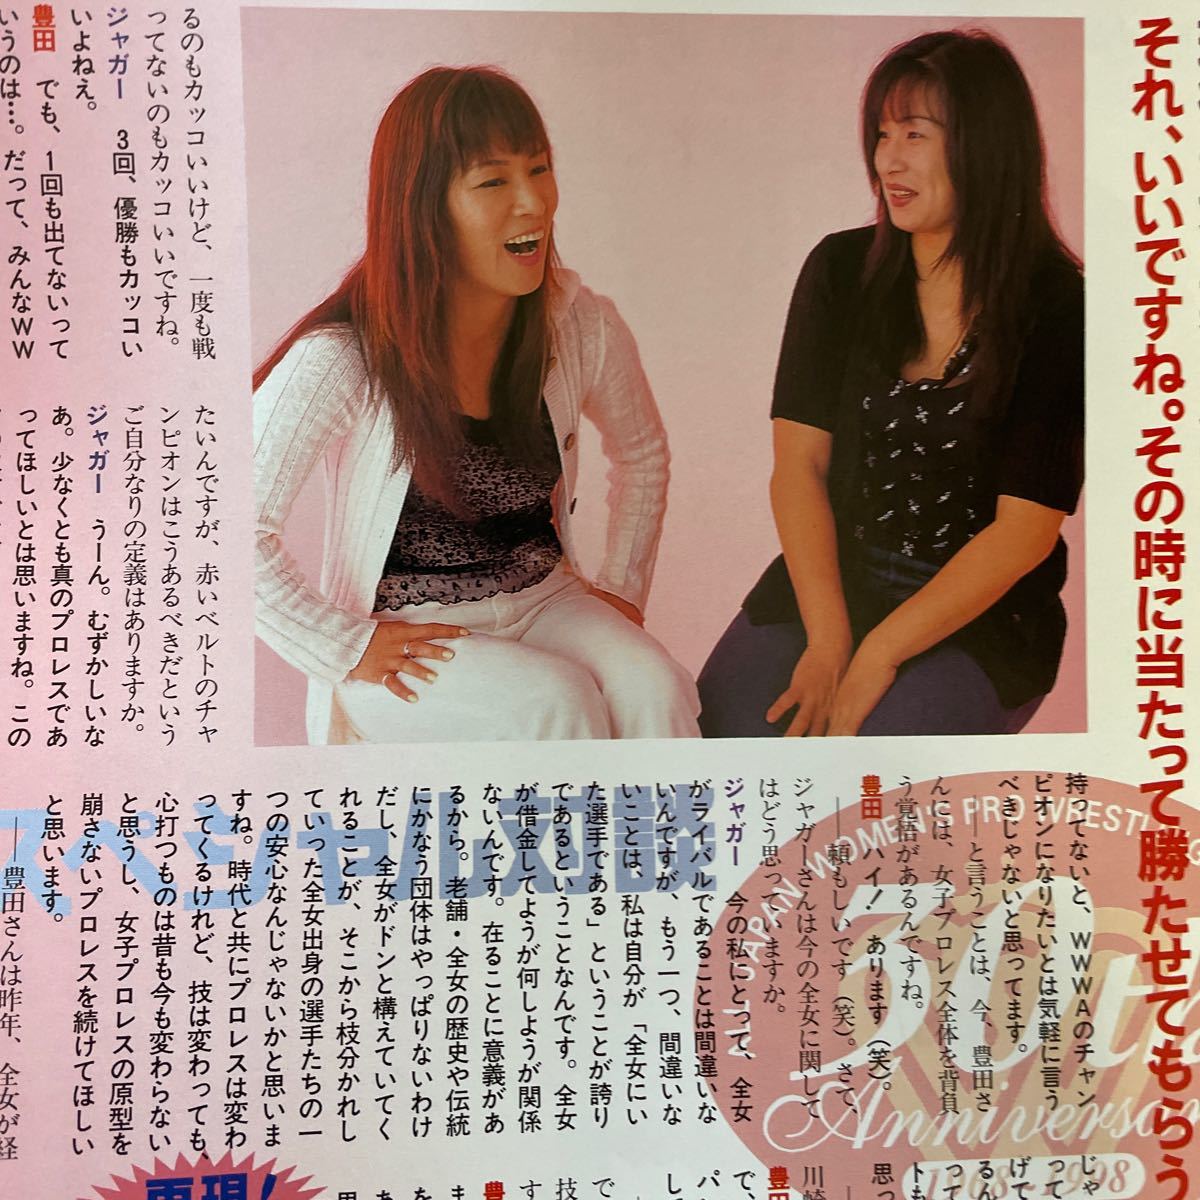 Lady’s ゴング Vol.29 1998/07/14 M 